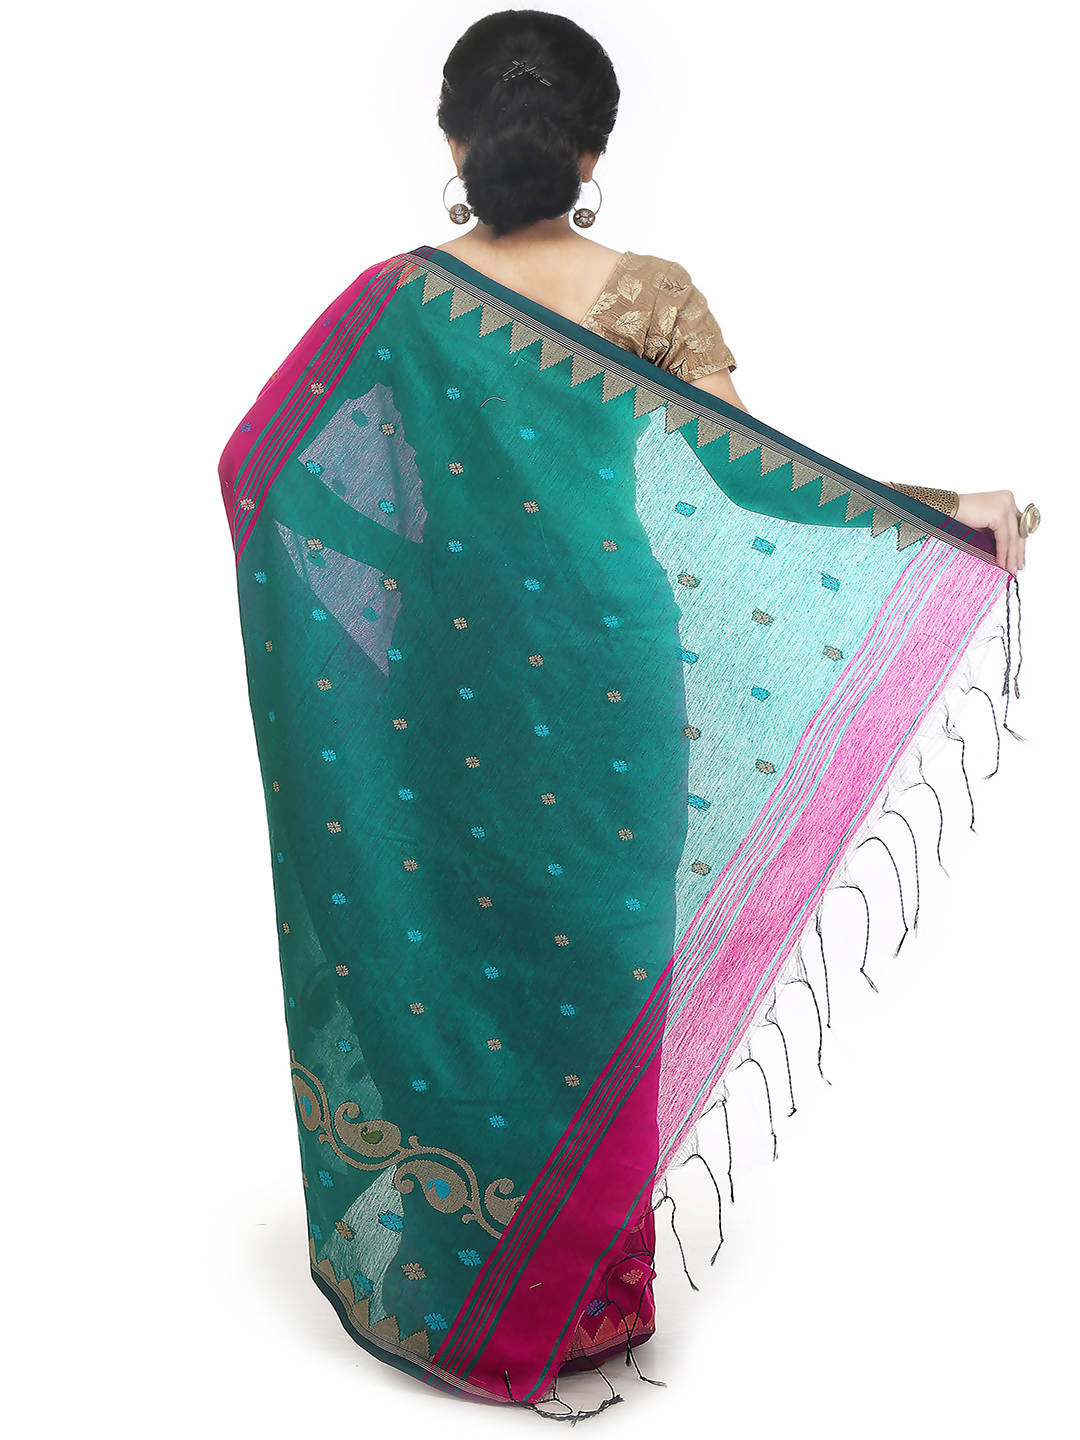 Pink raja bengal handloom extraweft work saree